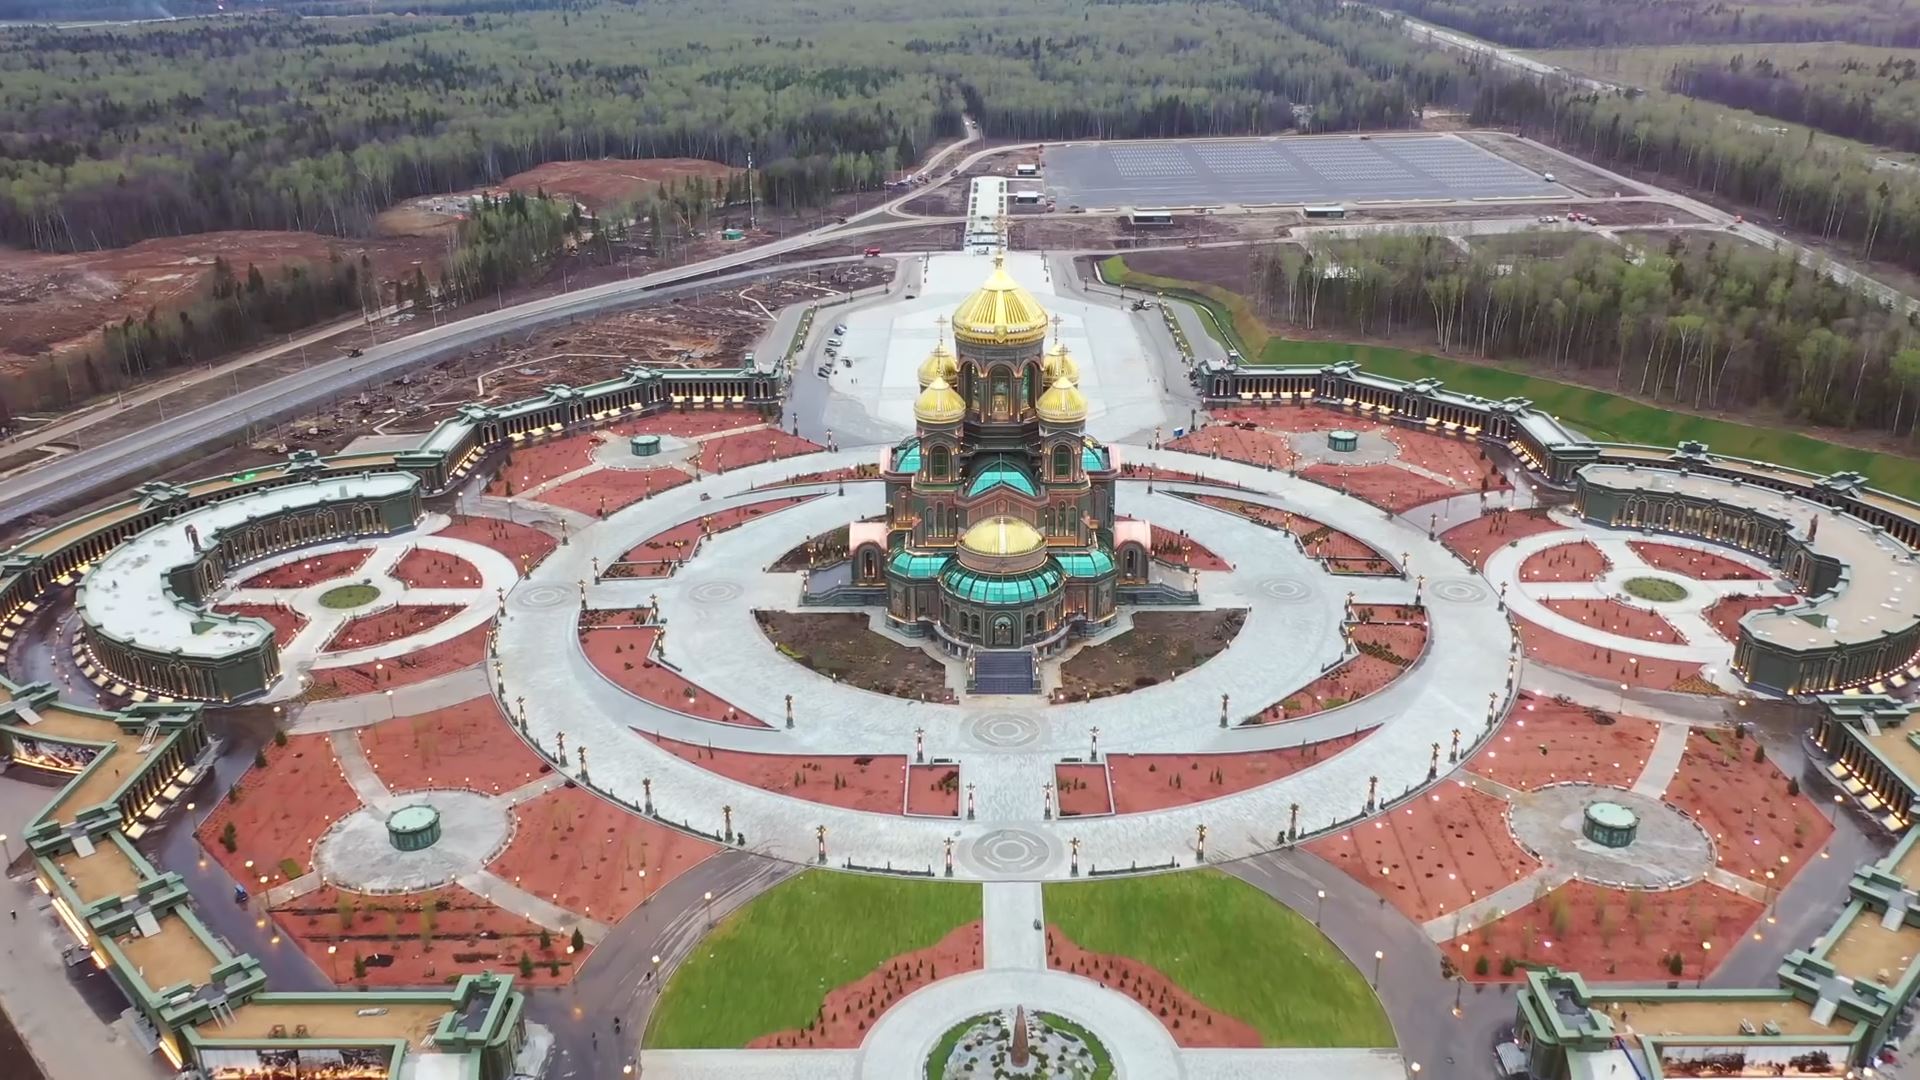 главный храм вооруженных сил россии в москве